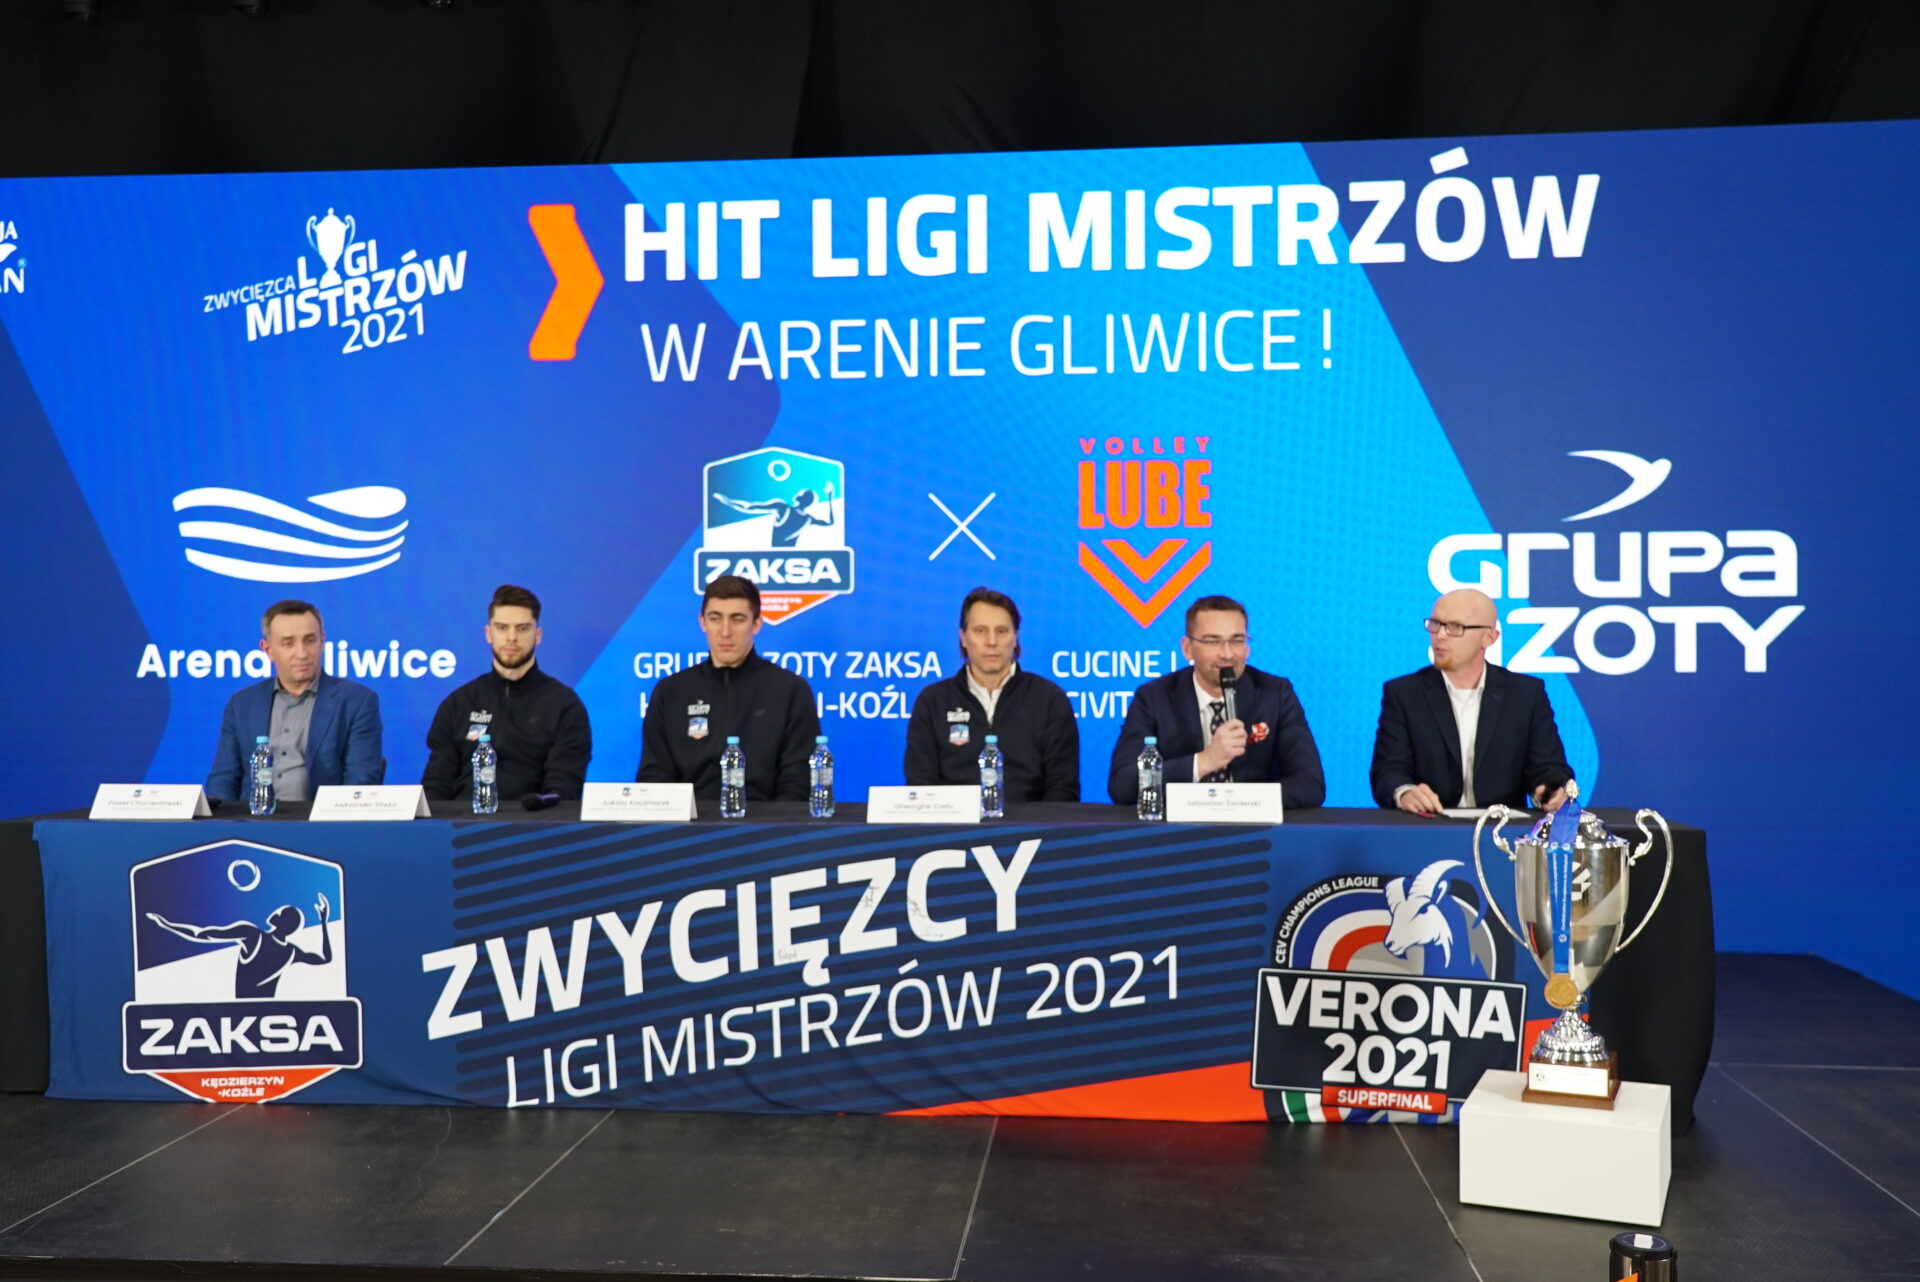 Zwycięzcy Ligi Mistrzów w Arenie Gliwice